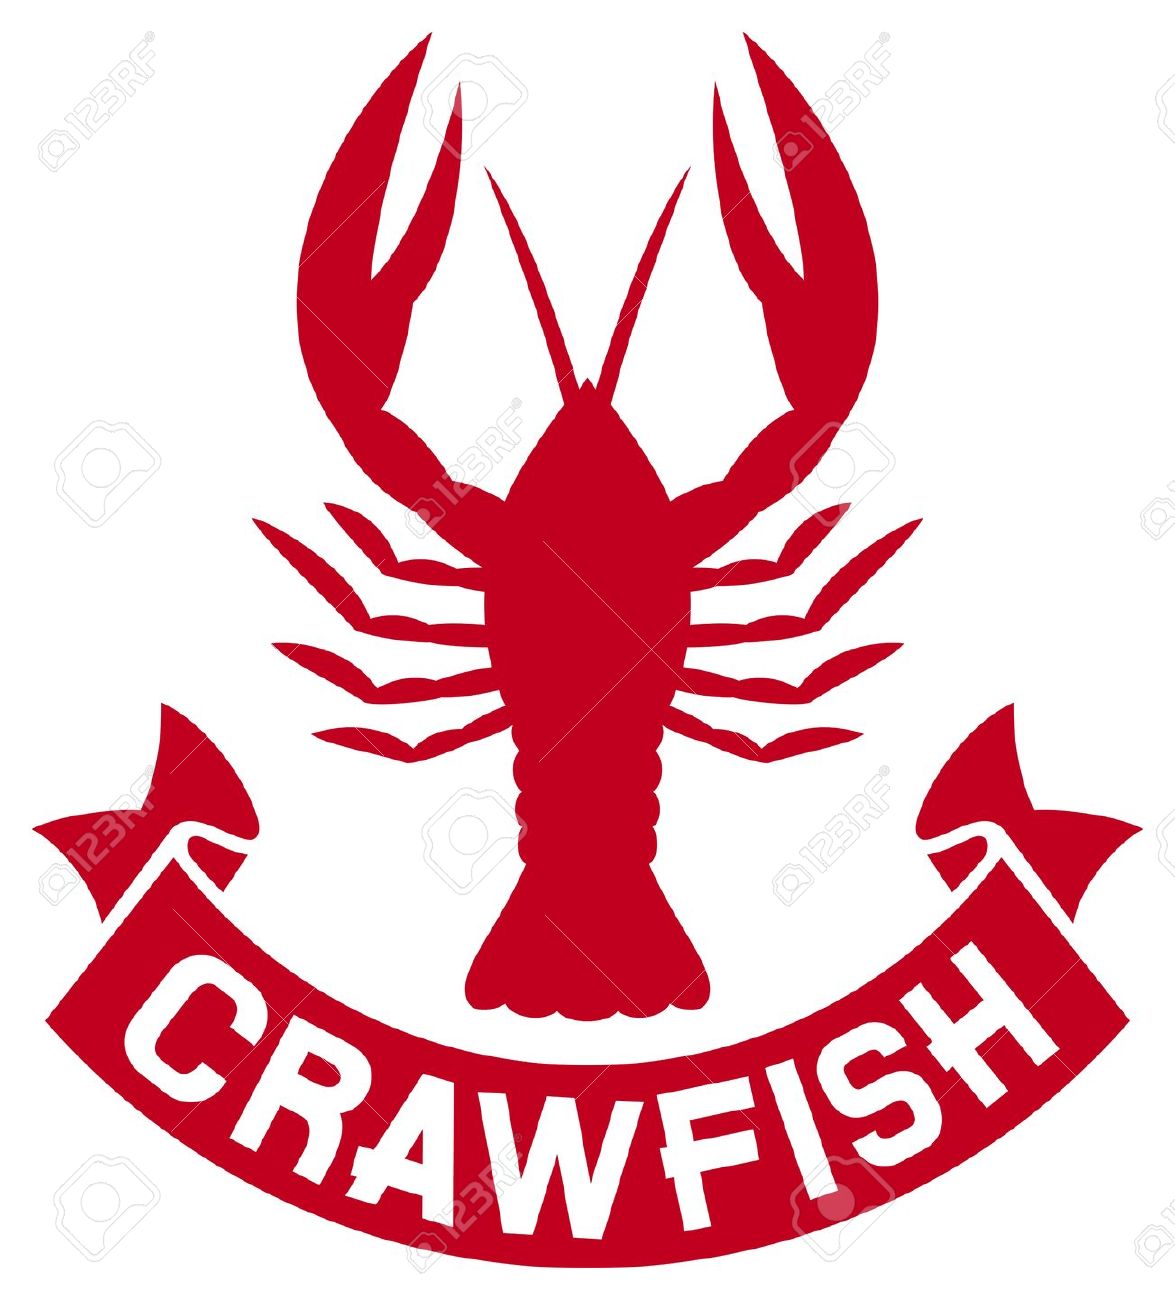 Cajun Crawfish Clip Art Pictu